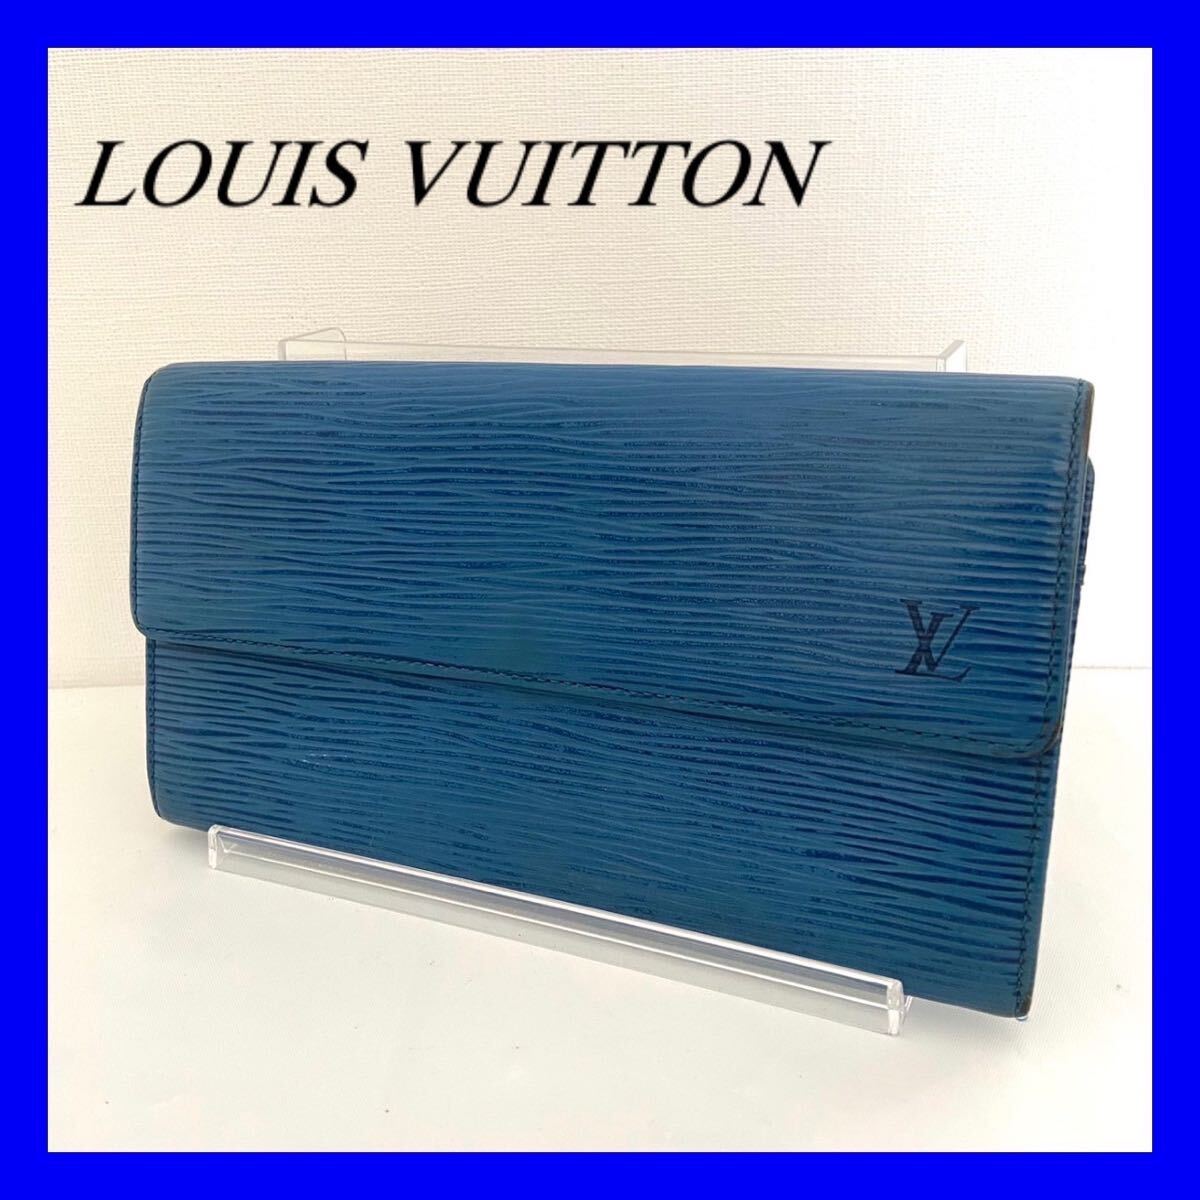 【1円スタート】LOUIS VUITTON ルイヴィトン エピ ポルトフォイユサラ 長財布 財布 の画像1